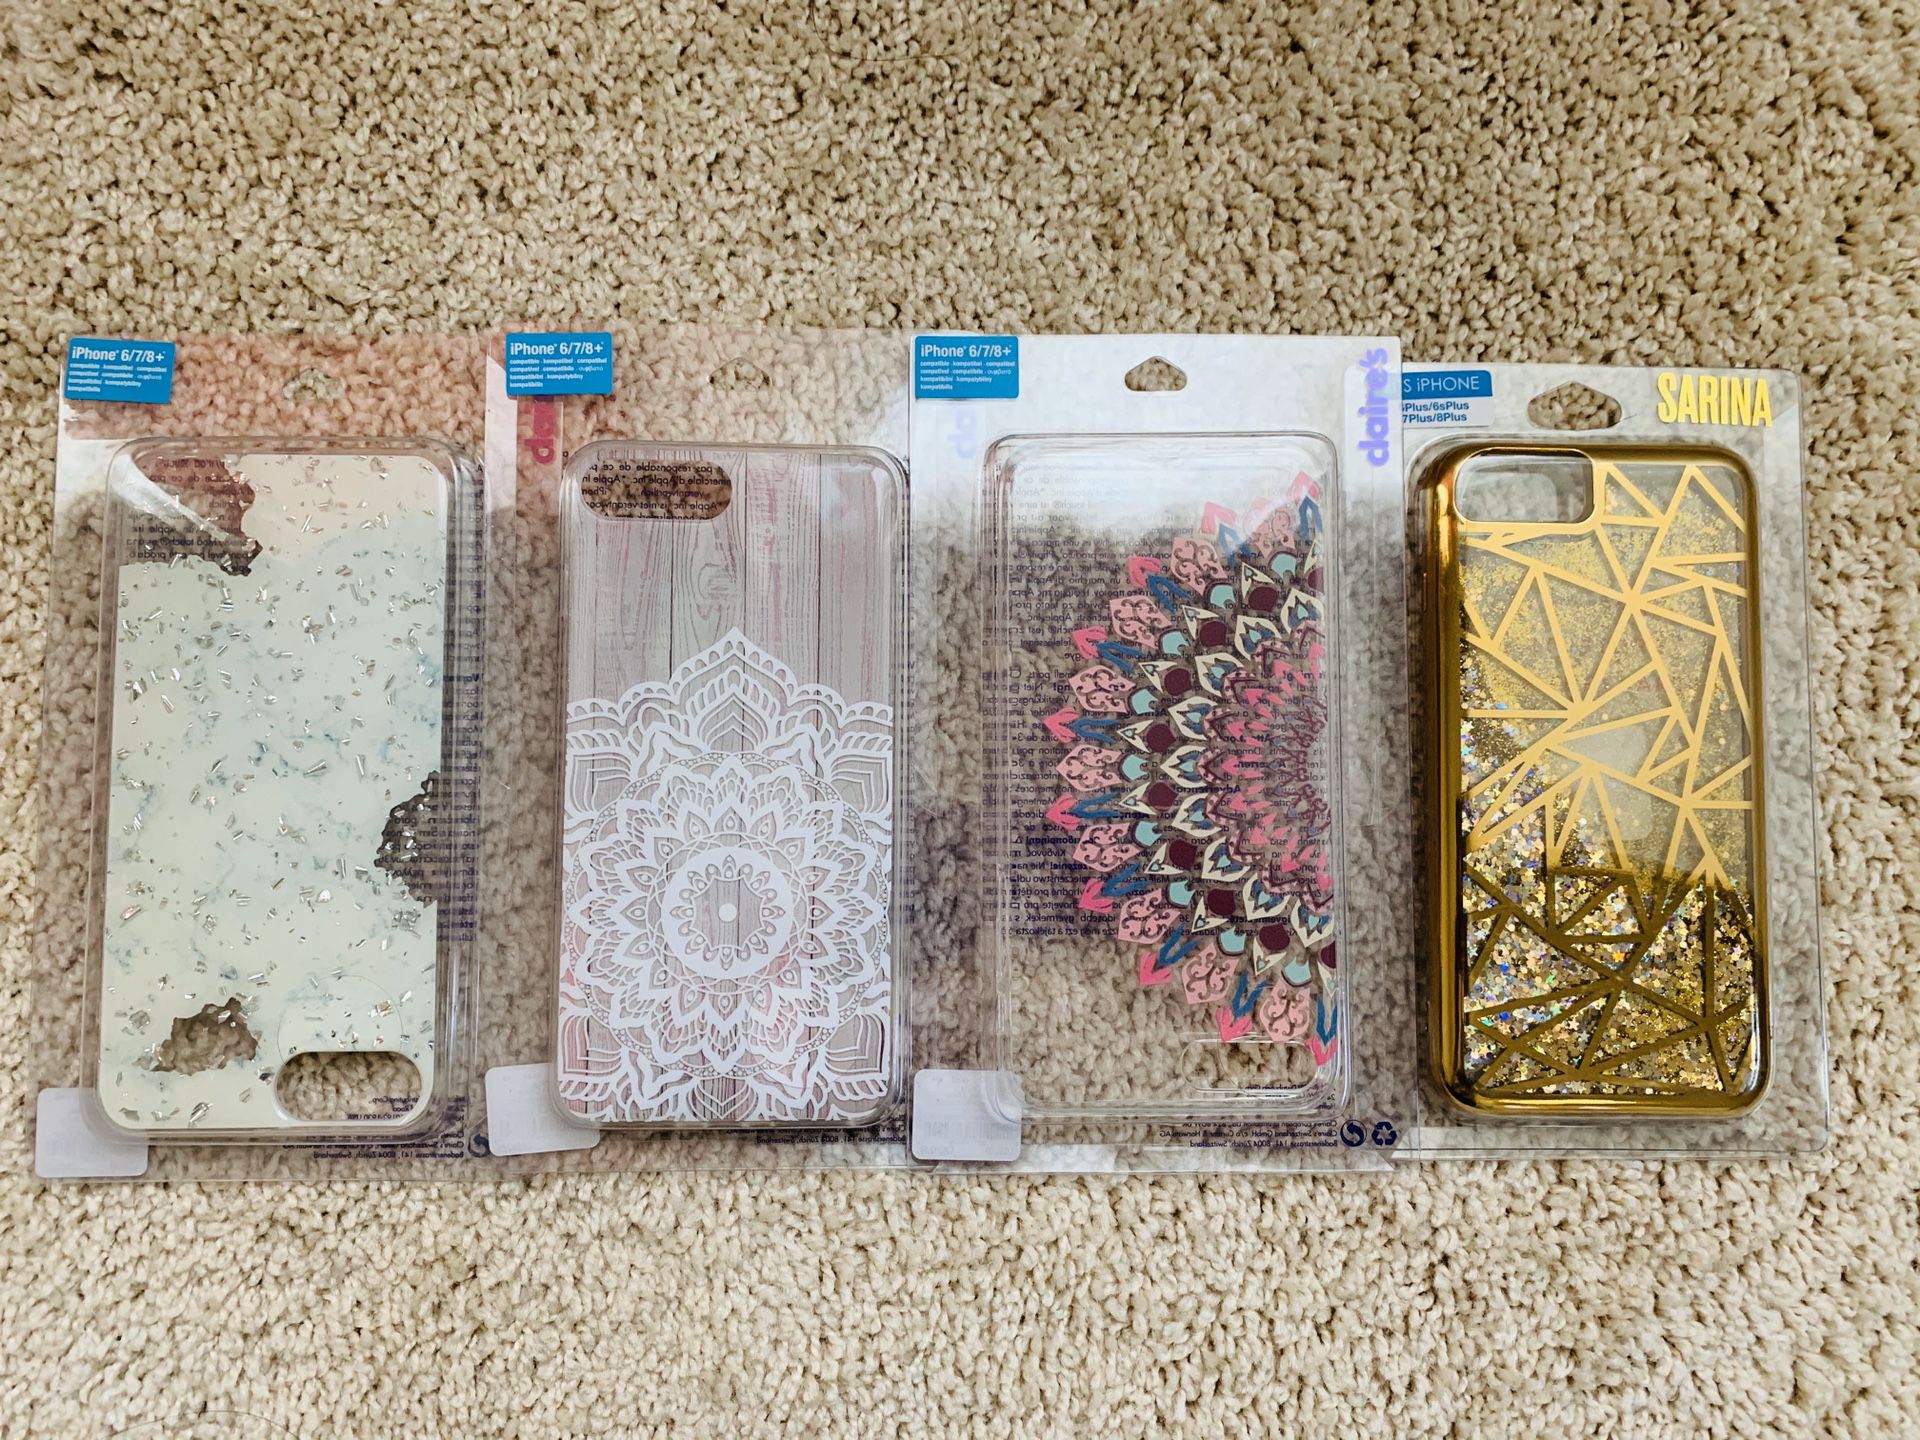 Iphone 6/7/8+ Cases